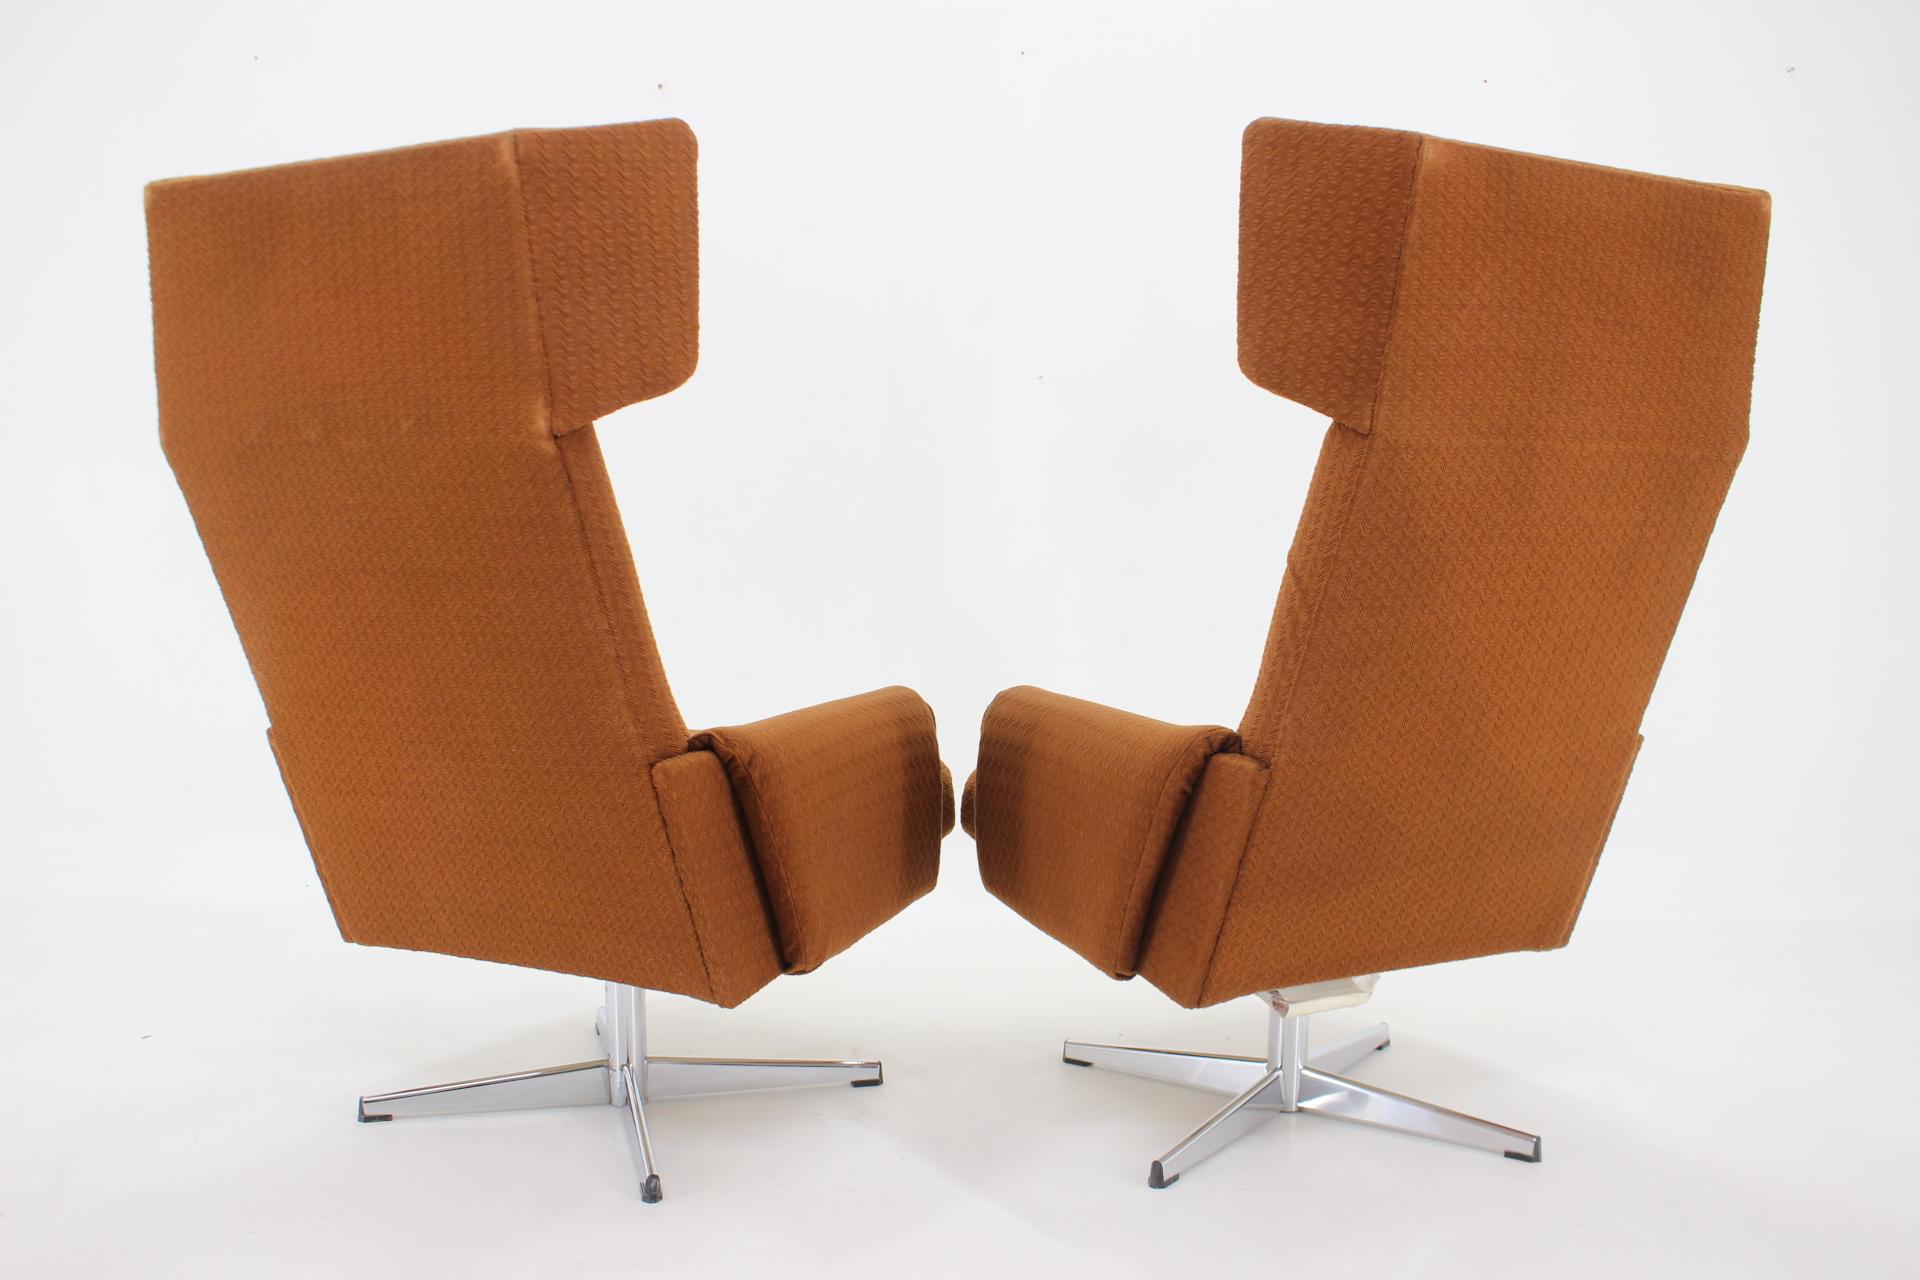 Fin du 20e siècle Paire de fauteuils pivotants à oreilles des années 1970 ,Tchécoslovaquie